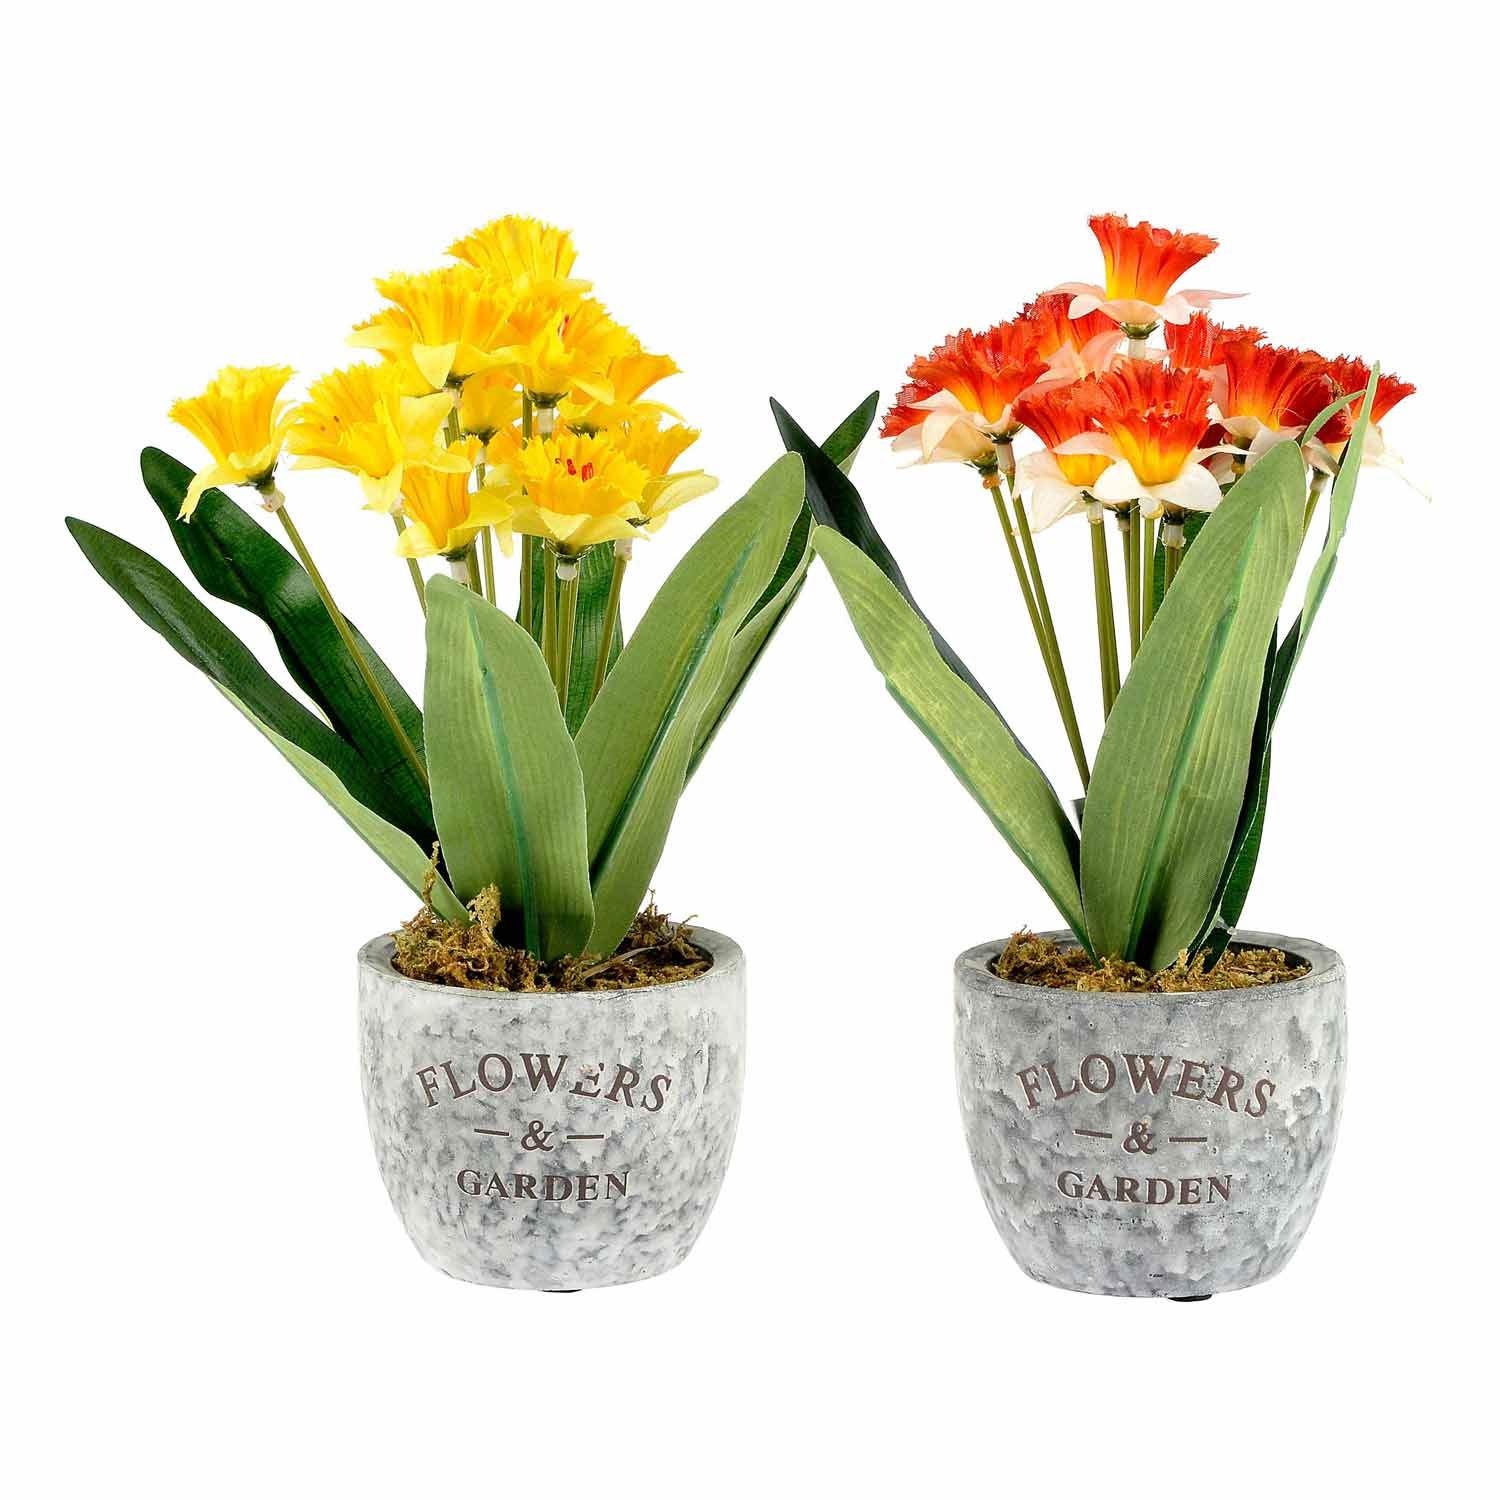 Artificial Narcissus Daffodil Plant in Ceramic Pot Yellow & Orange ...